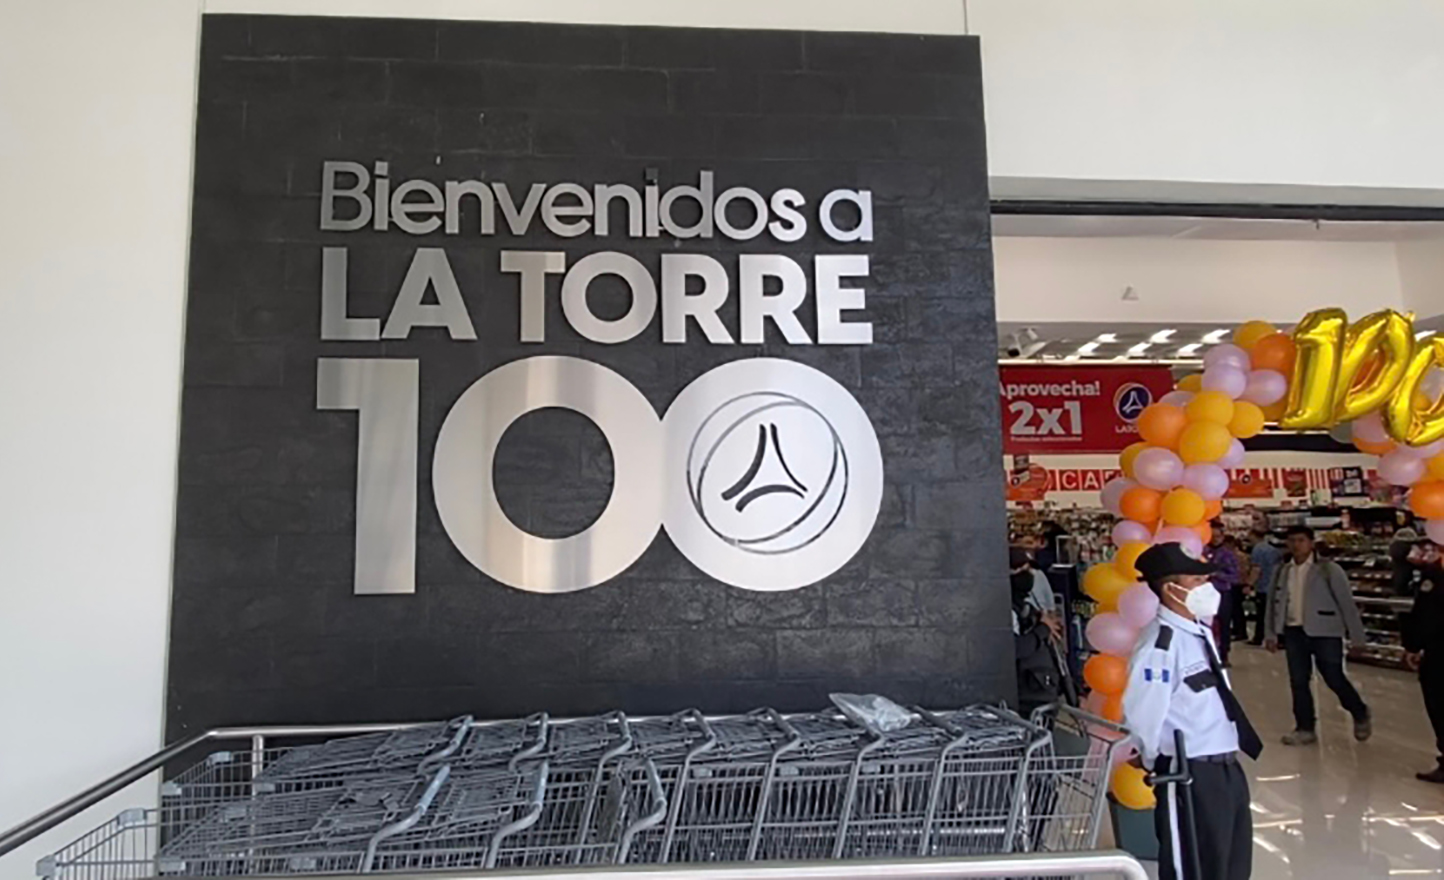 La nueva tienda como es característico de la marca, ofrecerá los productos importados de la mejor calidad. Foto Prensa Libre: Cortesía